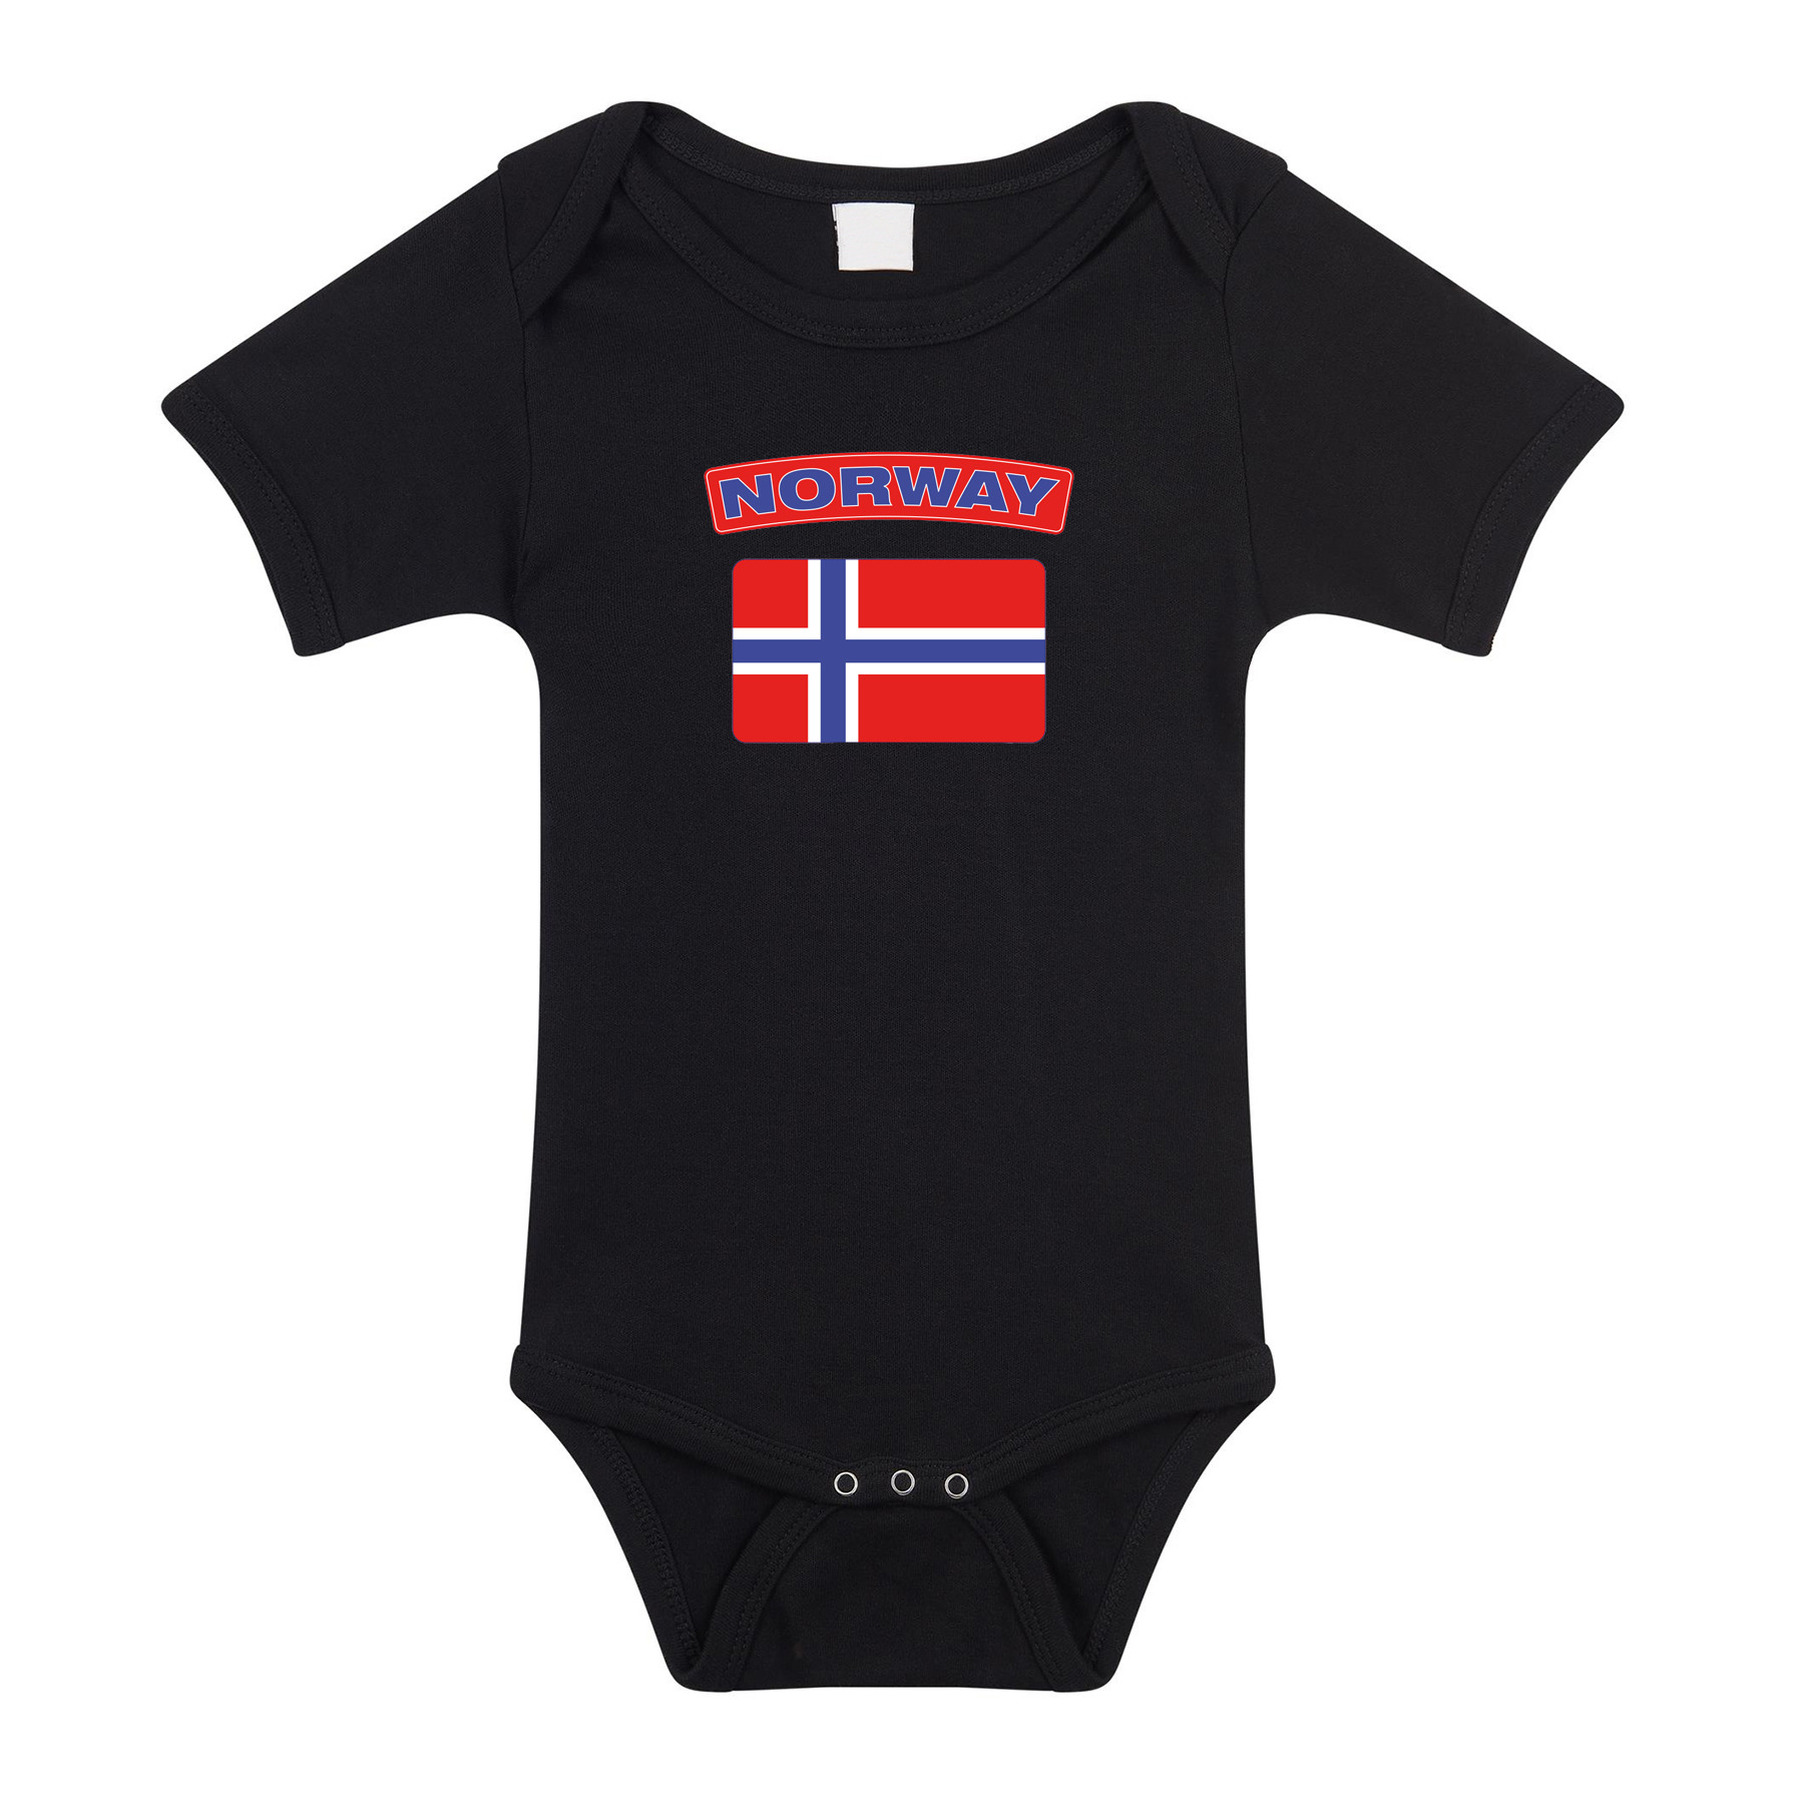 Norway romper met vlag Noorwegen zwart voor babys